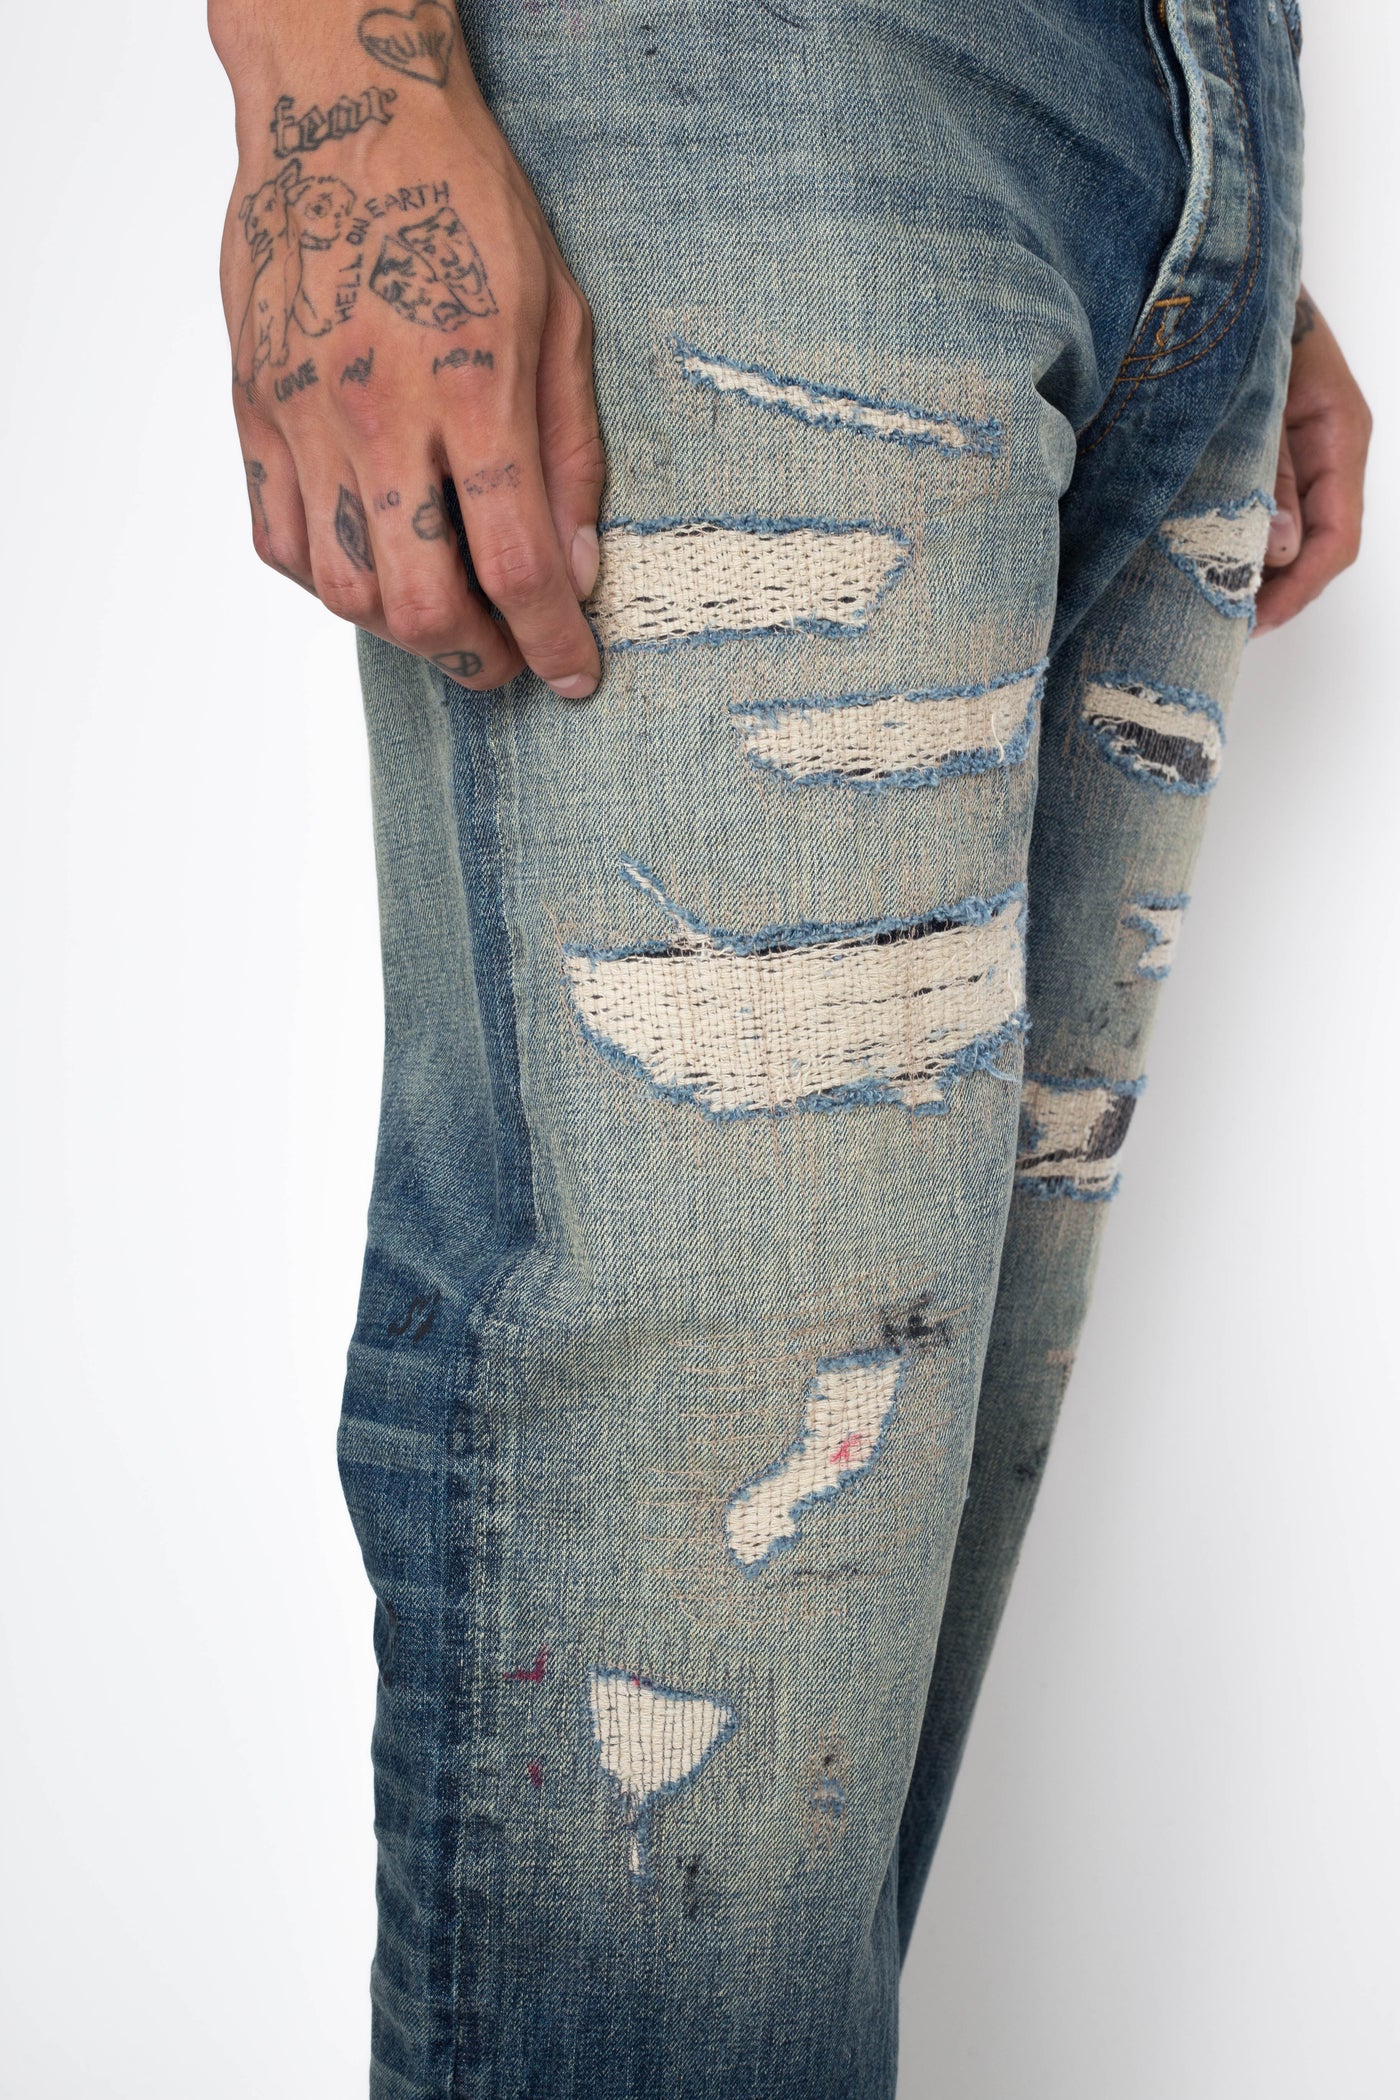 Ernmark: More jeans repair